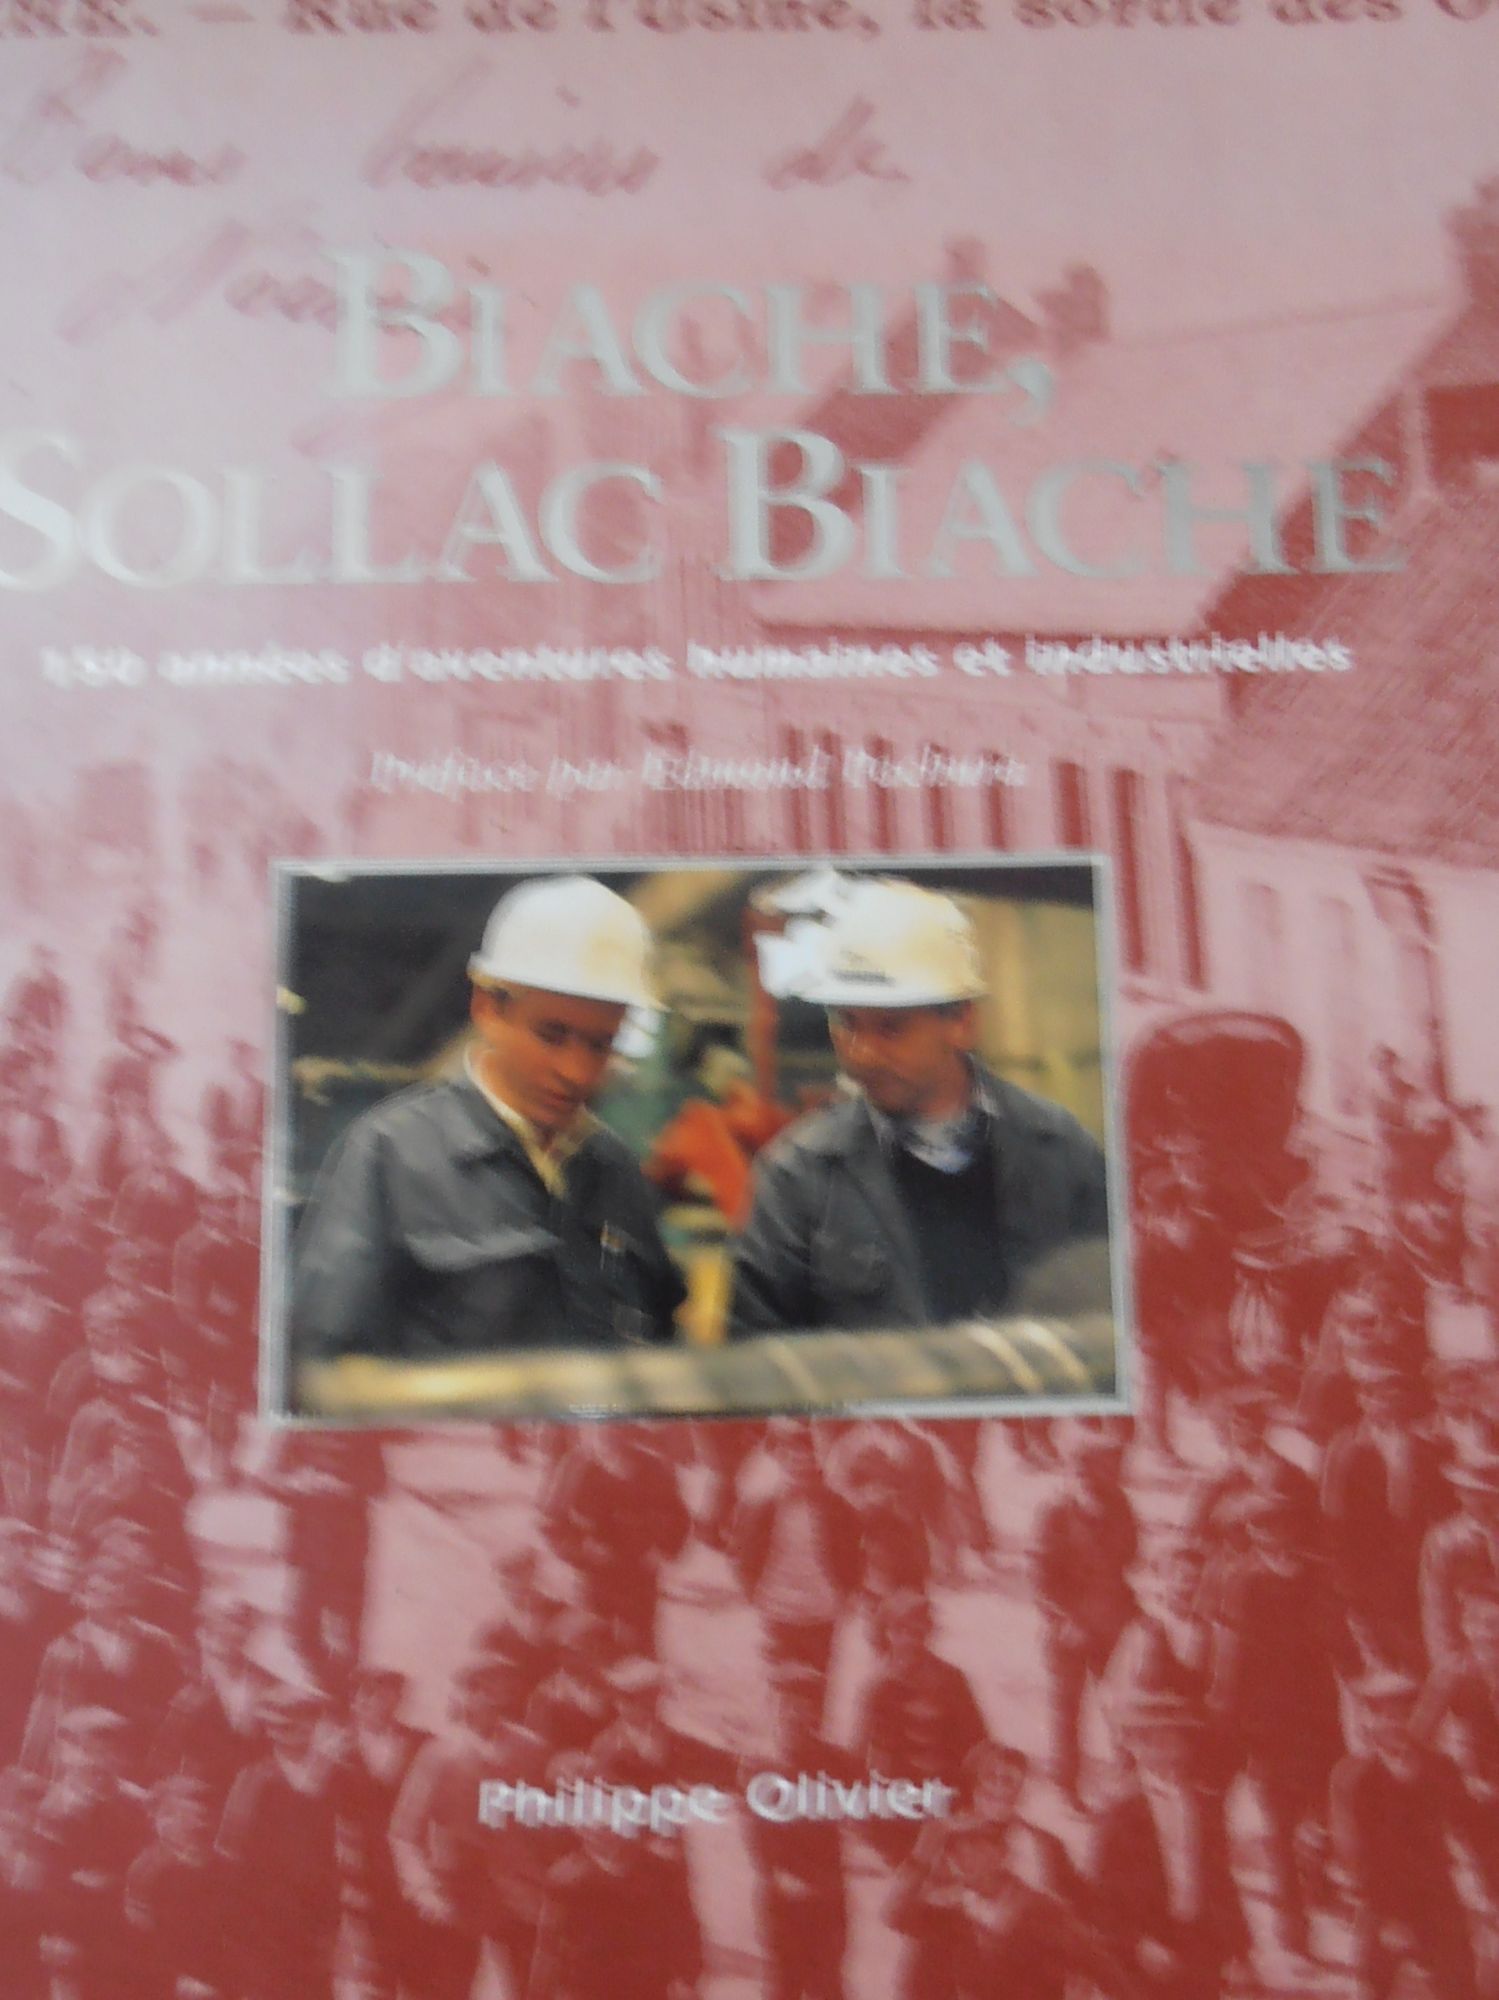 Biache, Sollac Biache: 150 années d'aventures humaines et industrielles